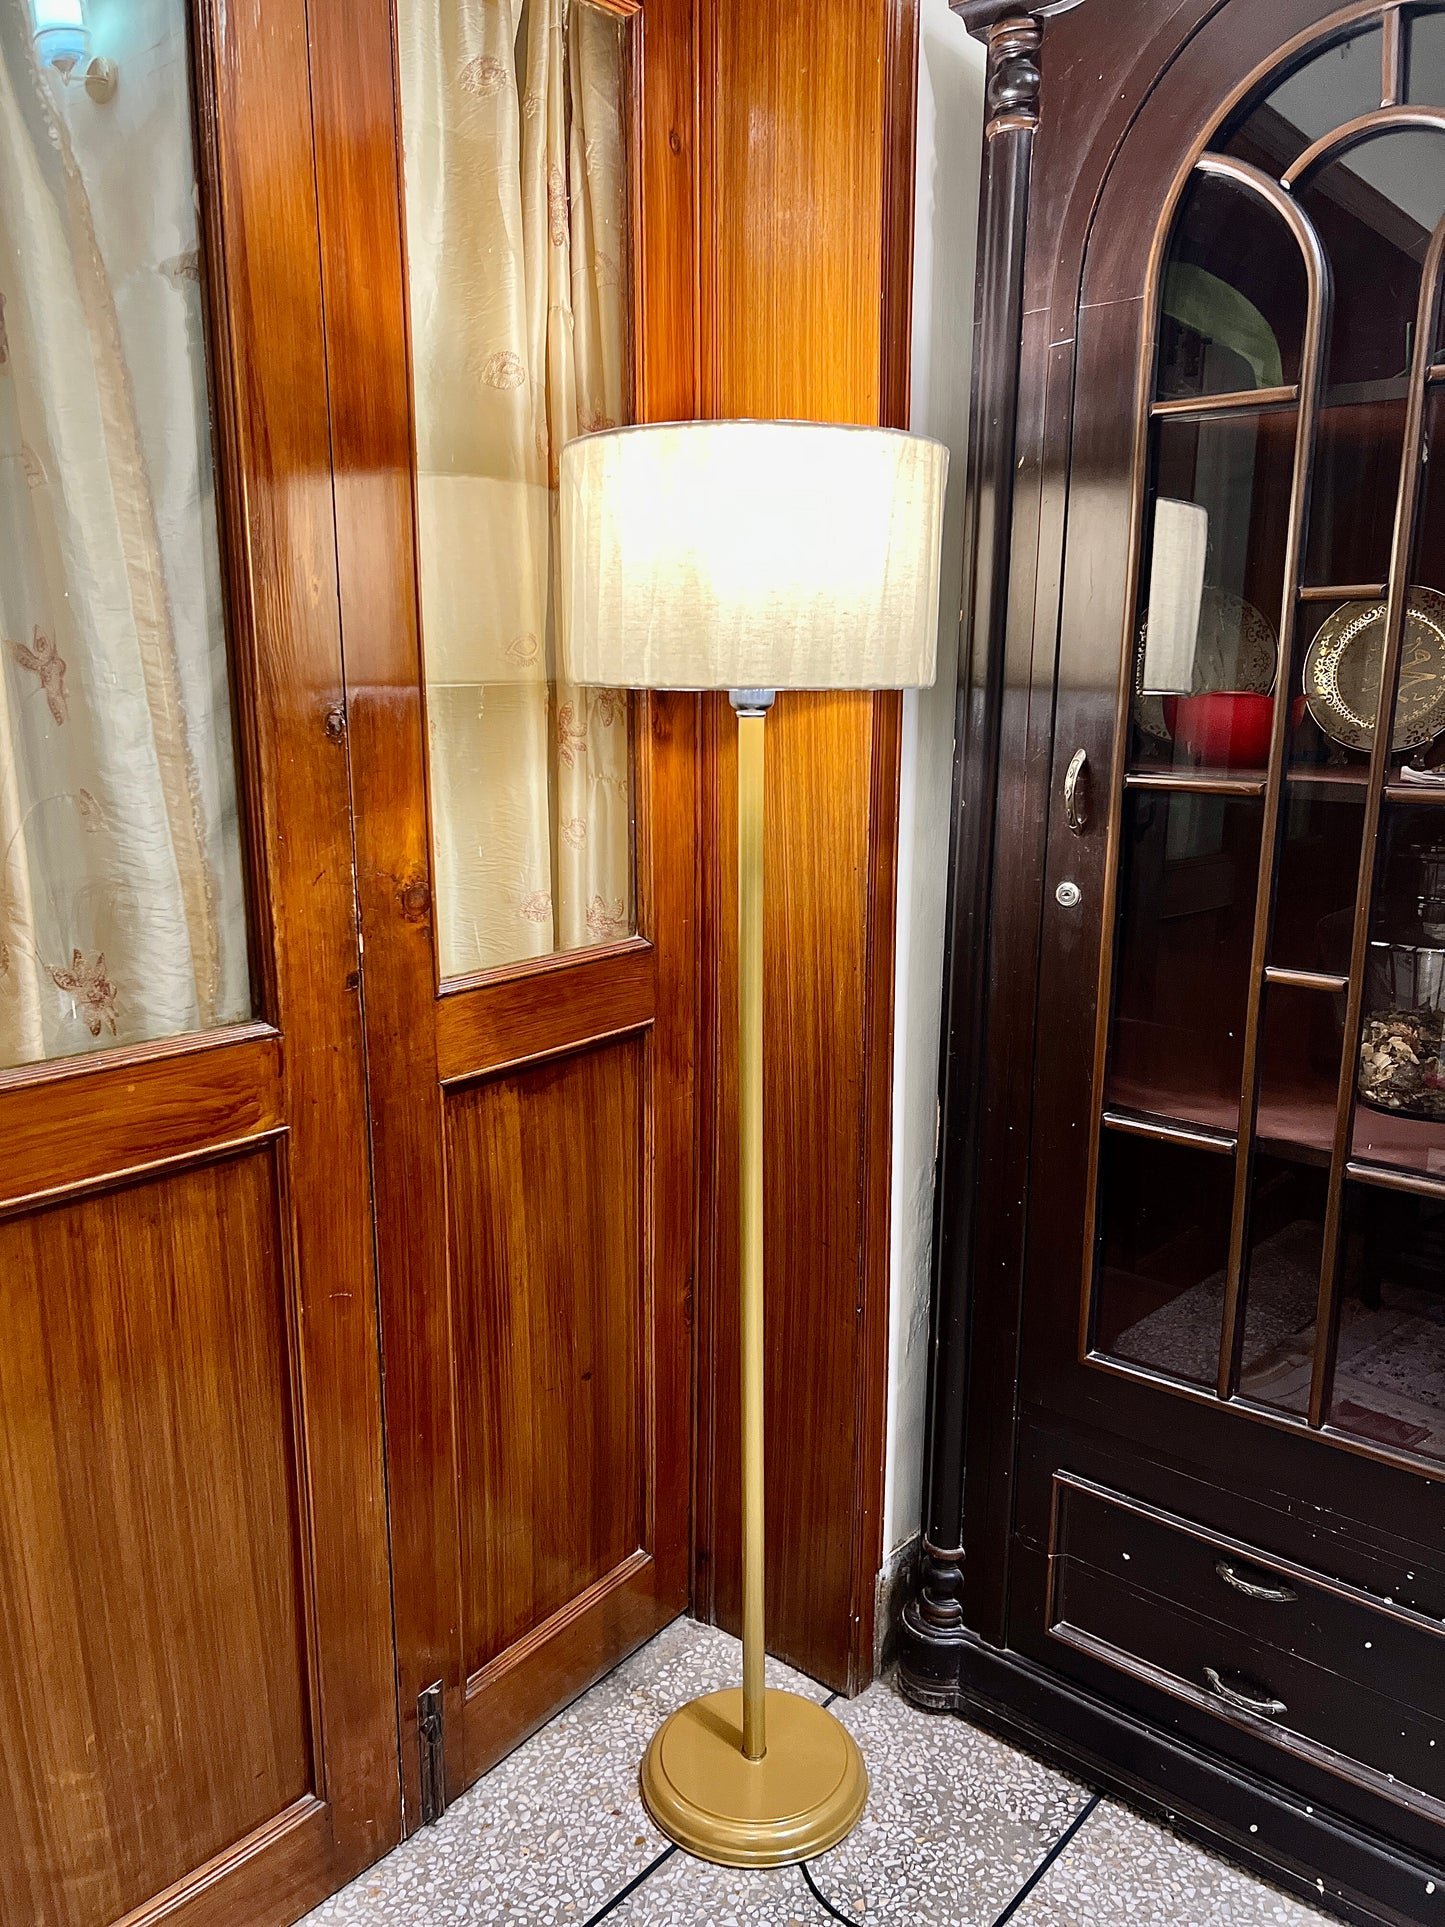 SKU : 102d - Straight Golden metal floor lamp